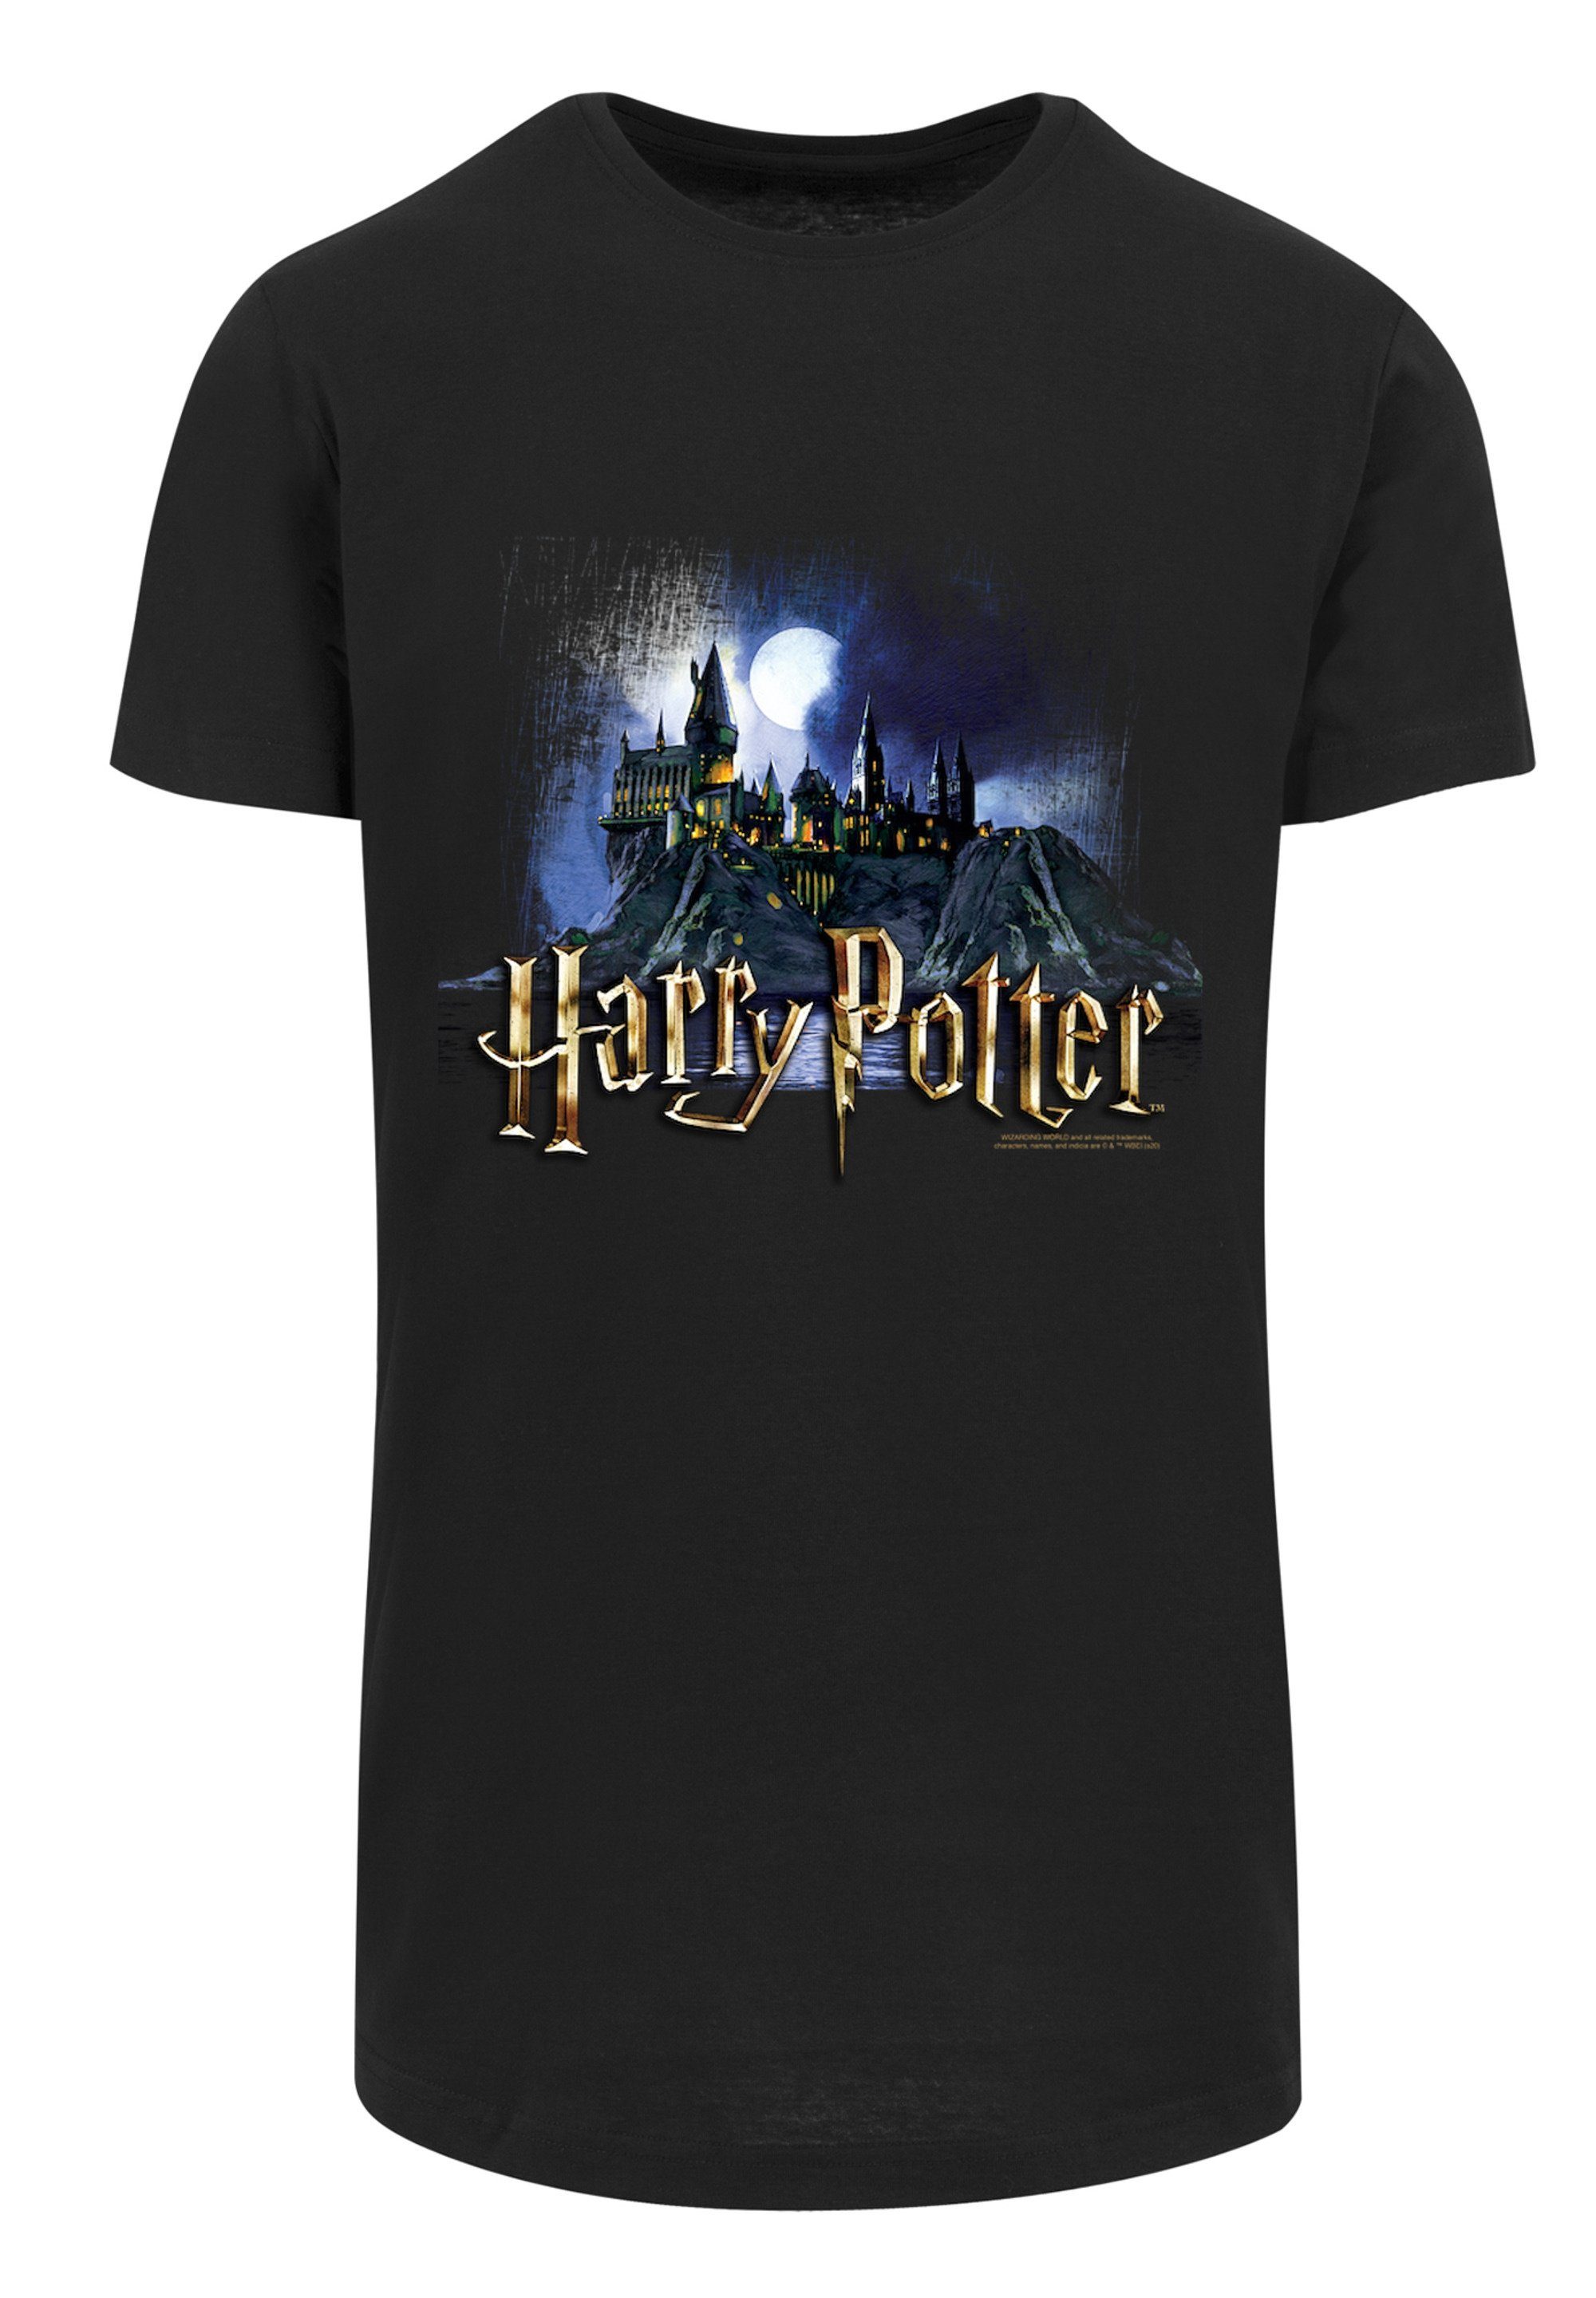 F4NT4STIC T-Shirt Harry Potter Print Hexerei für Hogwarts Zauberei Schule Castle und